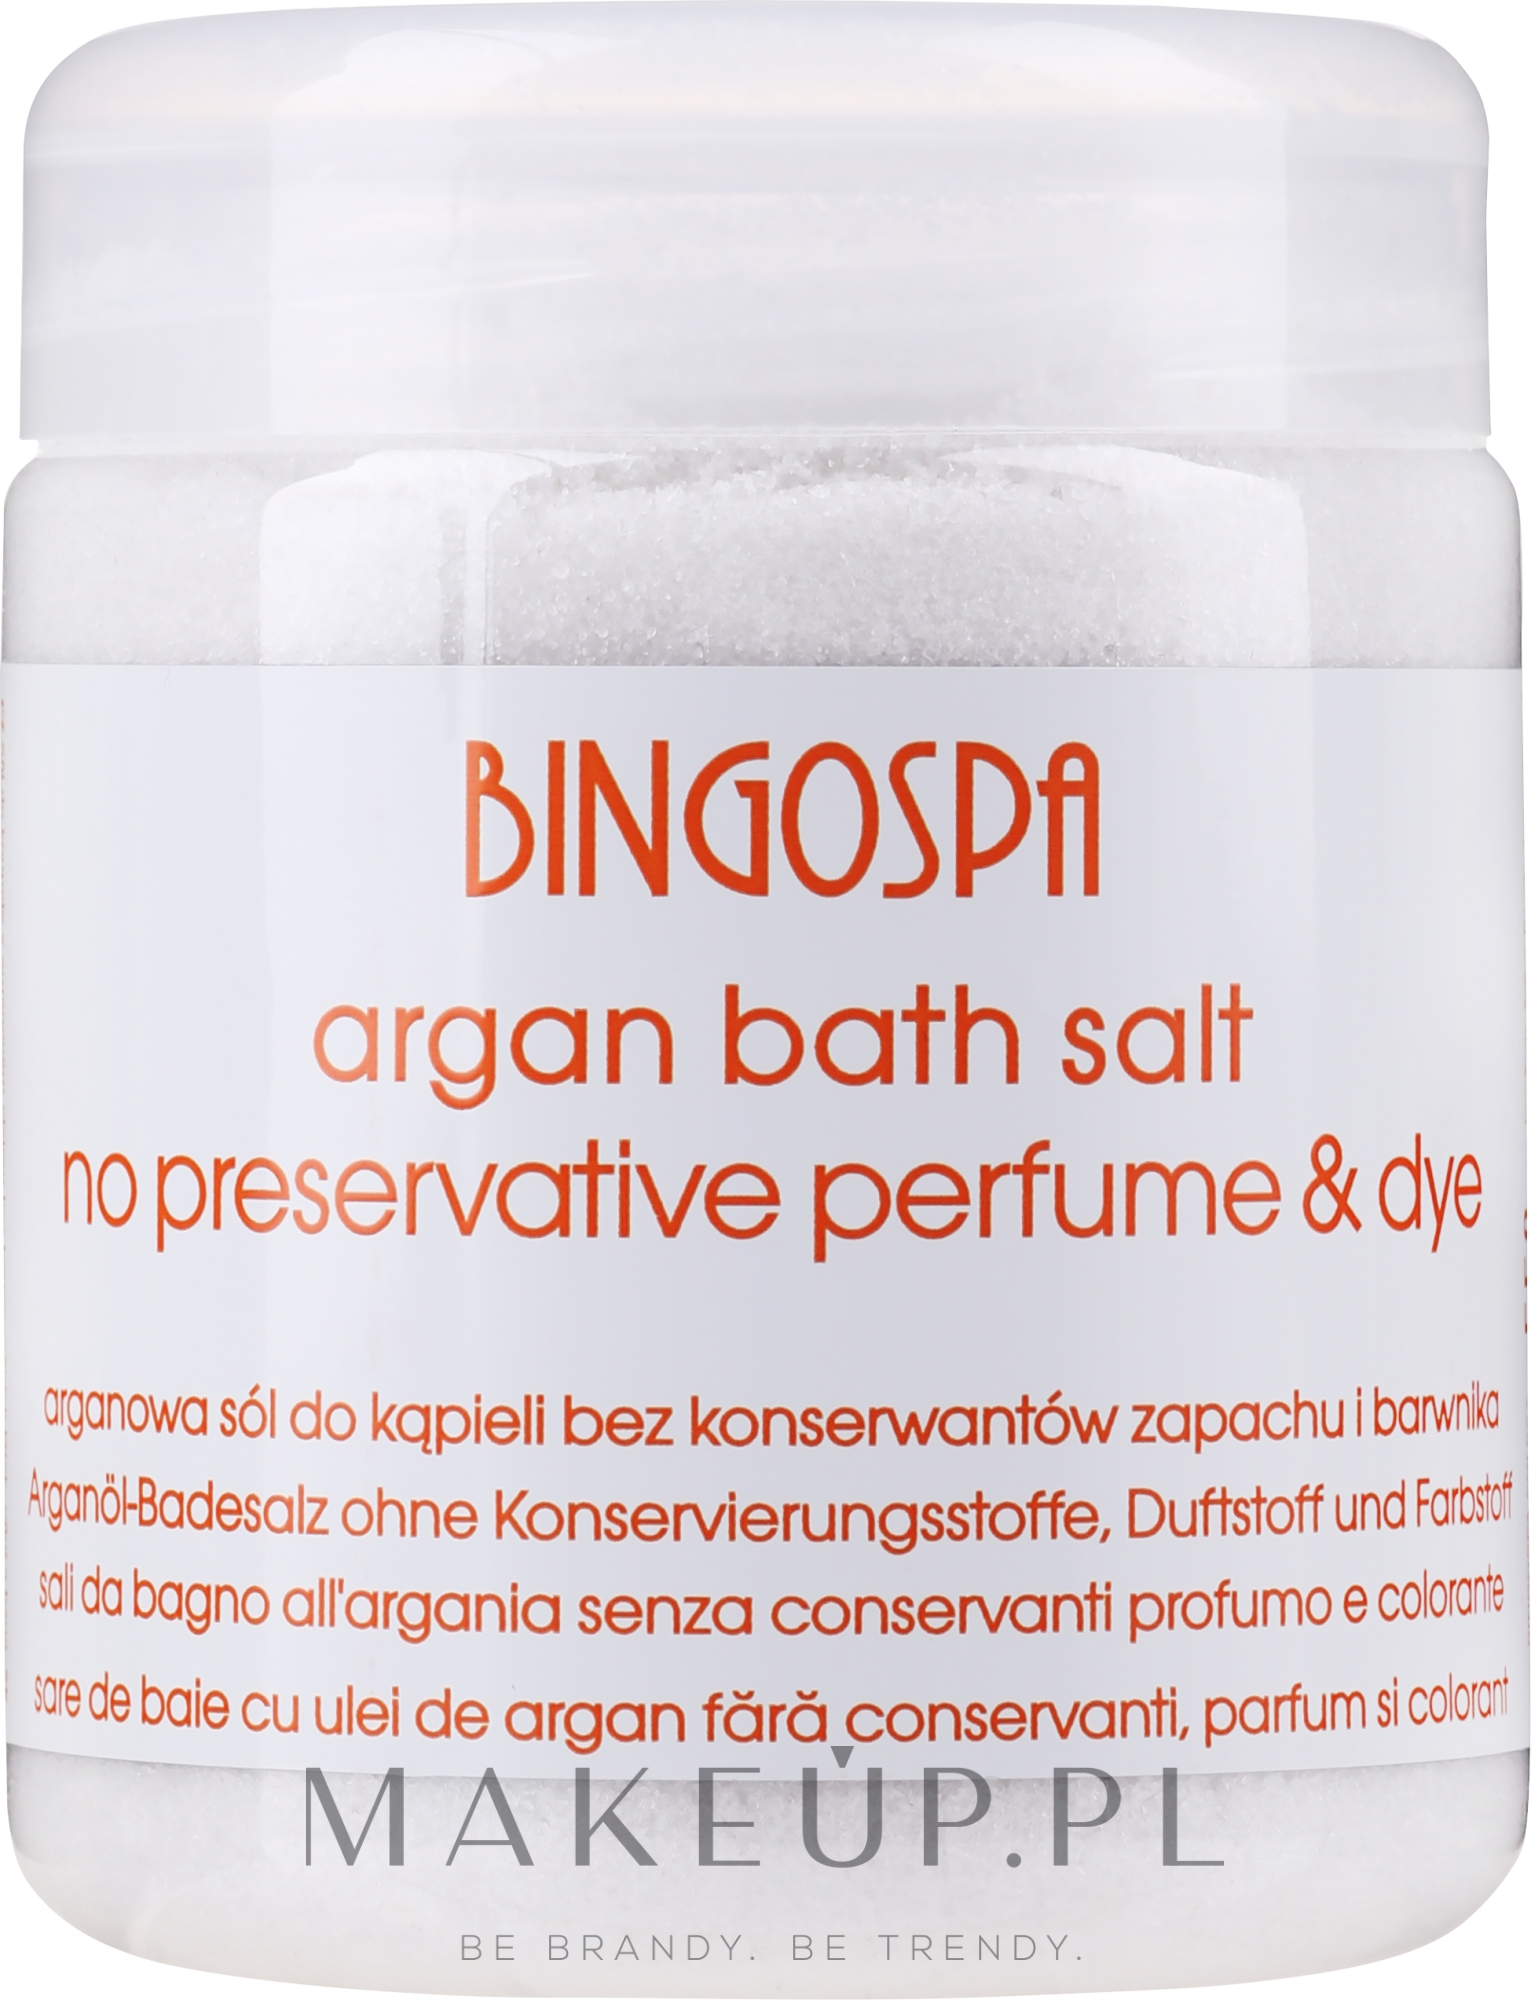 Sól arganowa do kąpieli, jacuzzi, zabiegów SPA, okładów i peelingu - BingoSpa Argan Salt Bath — Zdjęcie 550 g